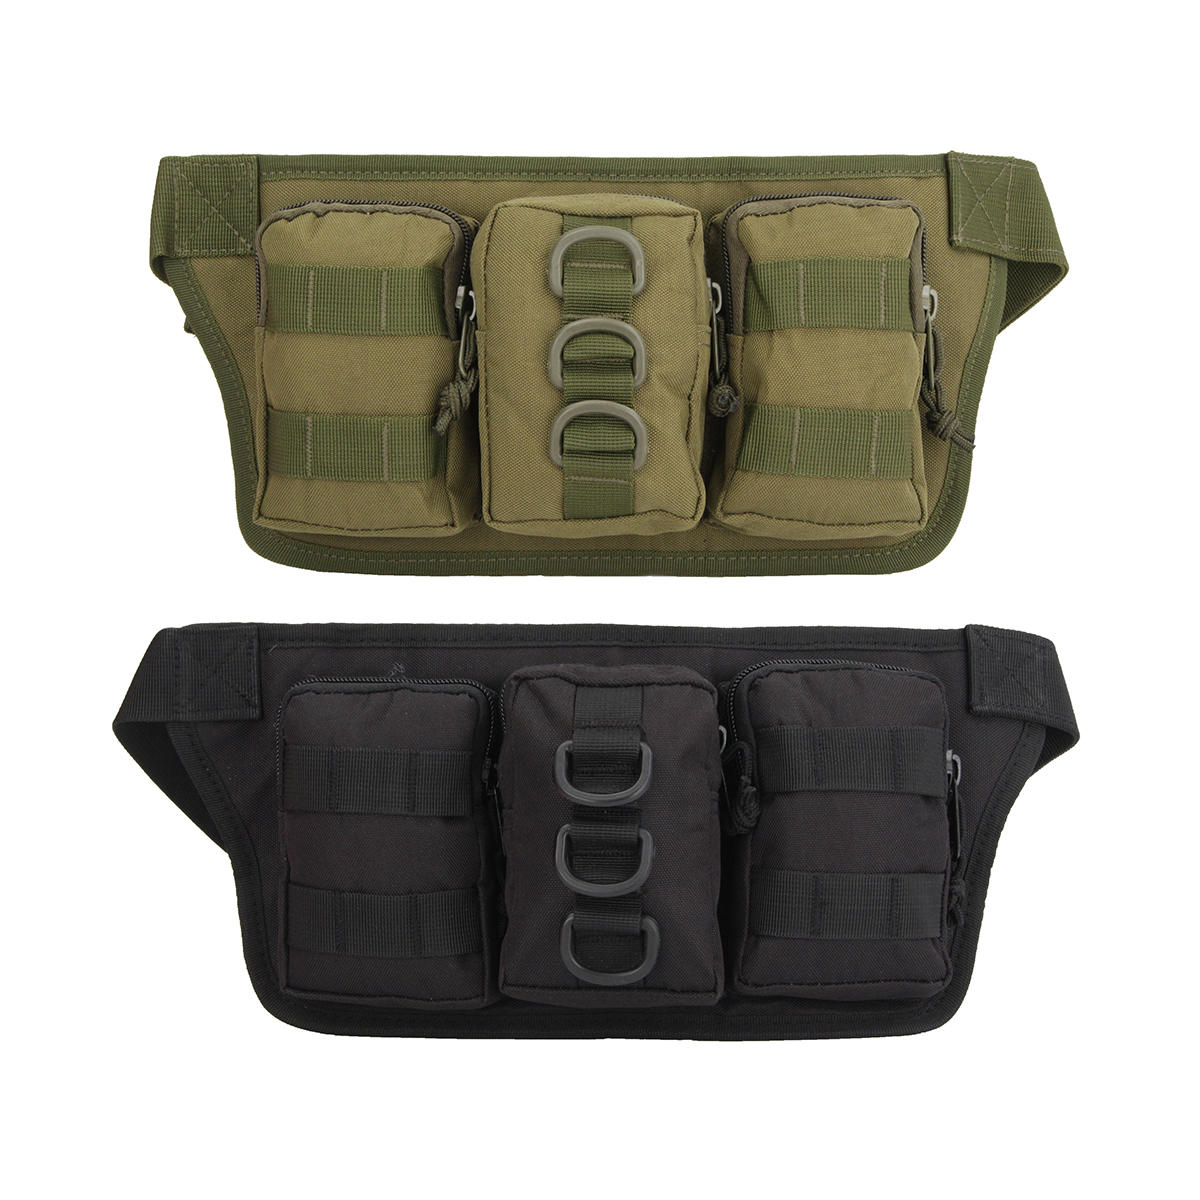 IPRee® 1PC Bolsa de cintura táctica de alta capacidad con 3 bolsillos para deportes al aire libre, bolsa de mano para gimnasio, correr, hacer senderismo y acampar